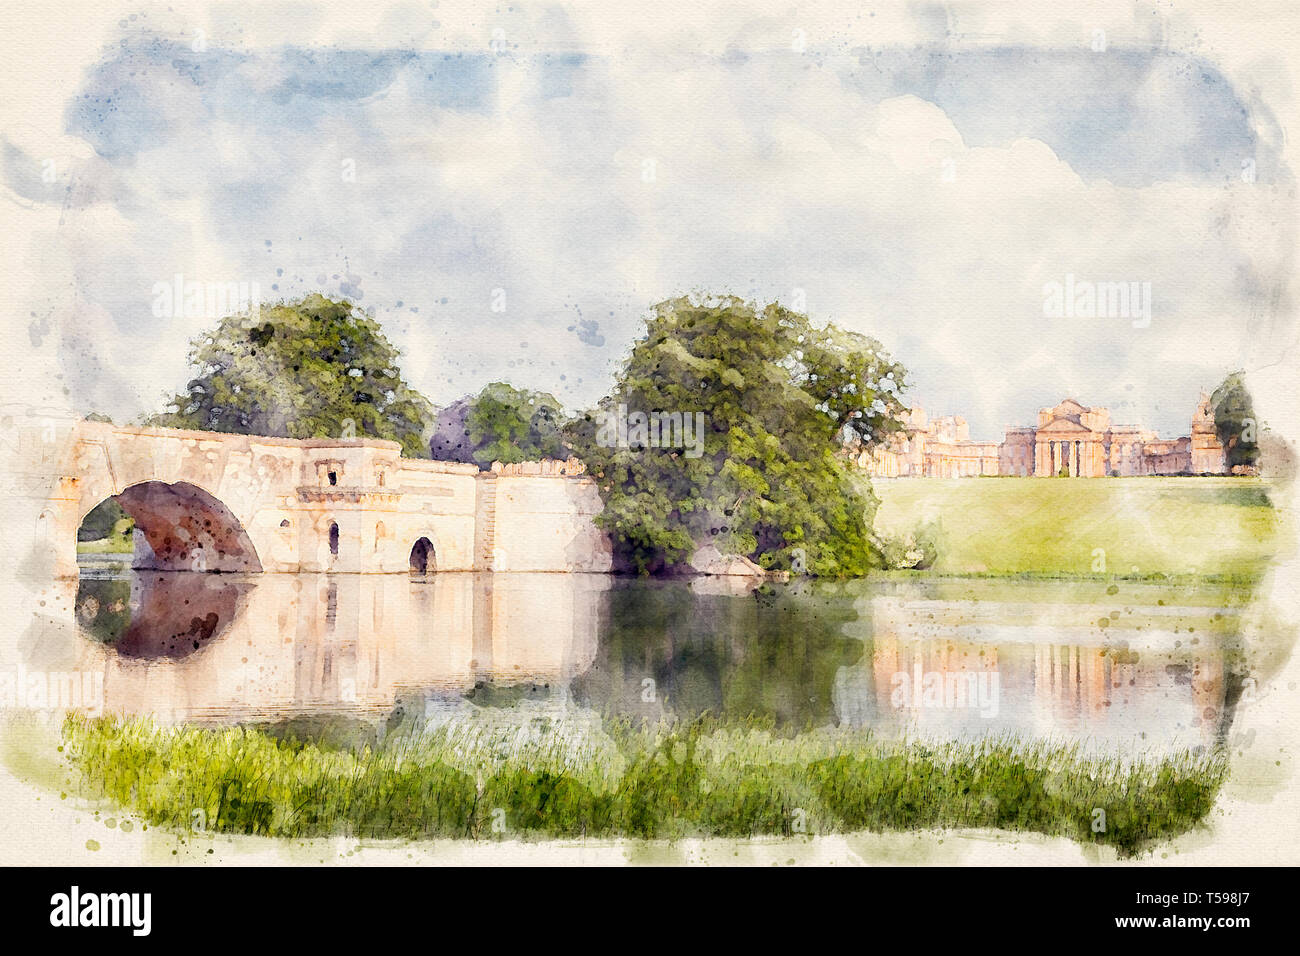 Aquarell von einem Foto von Blenheim Palace, Oxfordshire, England, Großbritannien Stockfoto